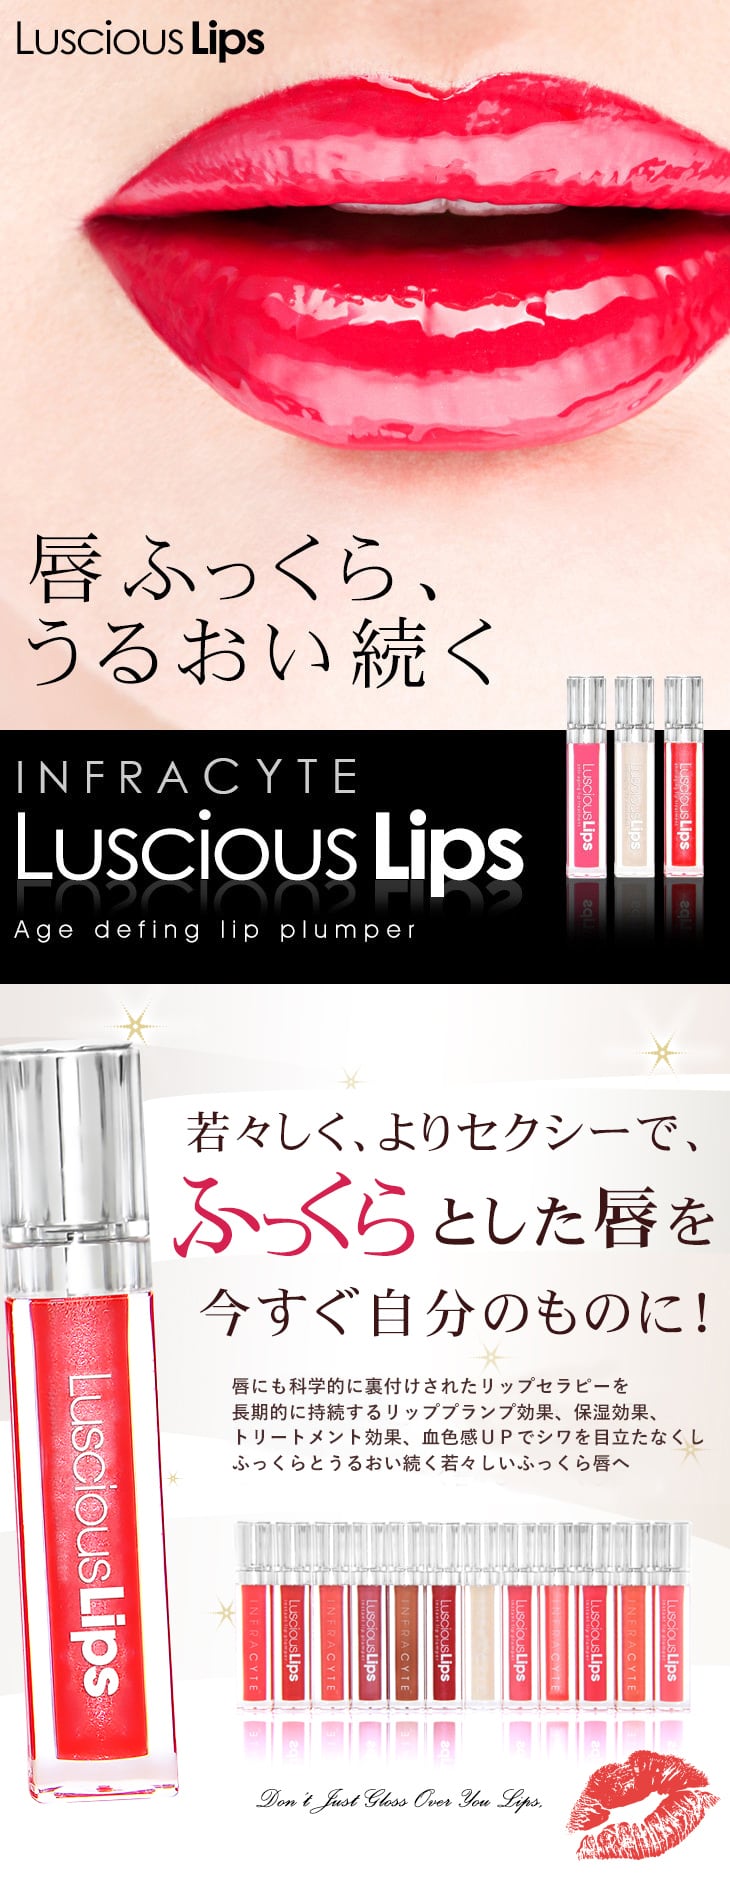 LUSCiOUS Lips 329 美容外科購入